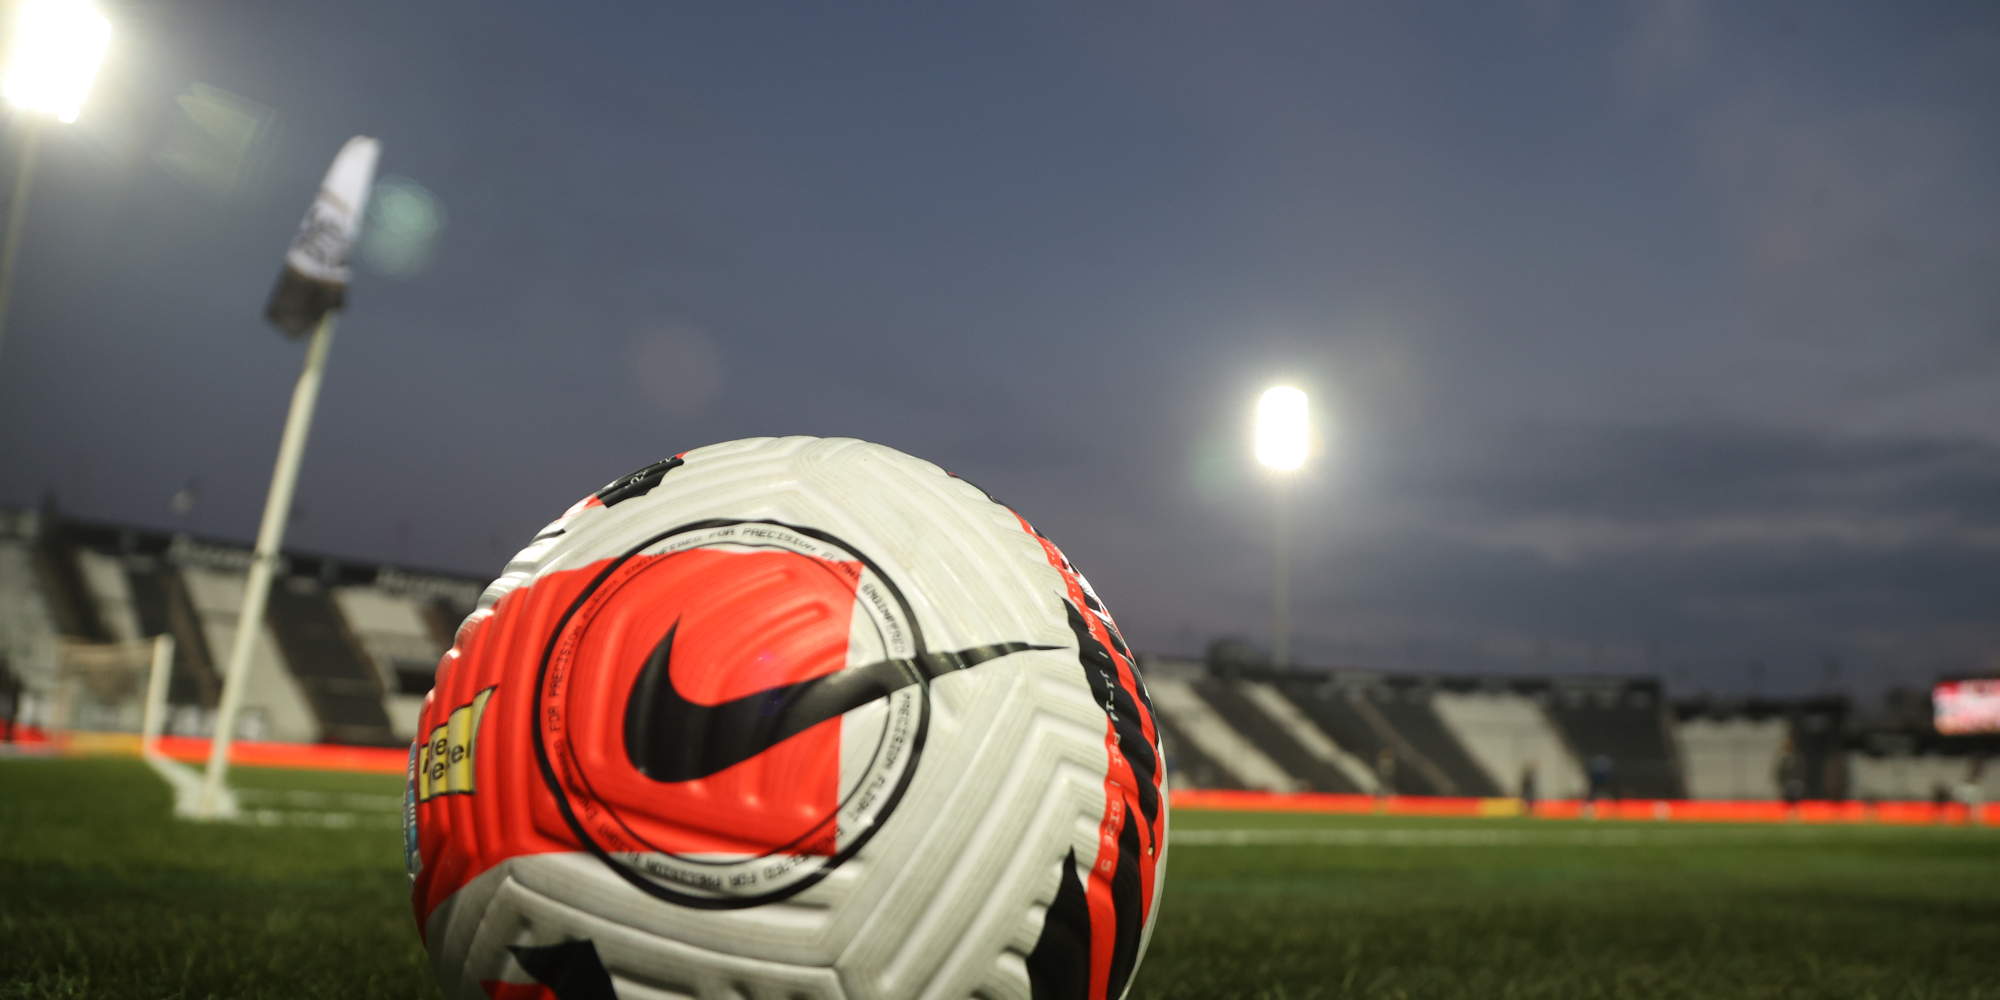 Γήπεδα ποδοσφαίρου και μια μπάλα στο χορτάρι - Ποδόσφαιρο